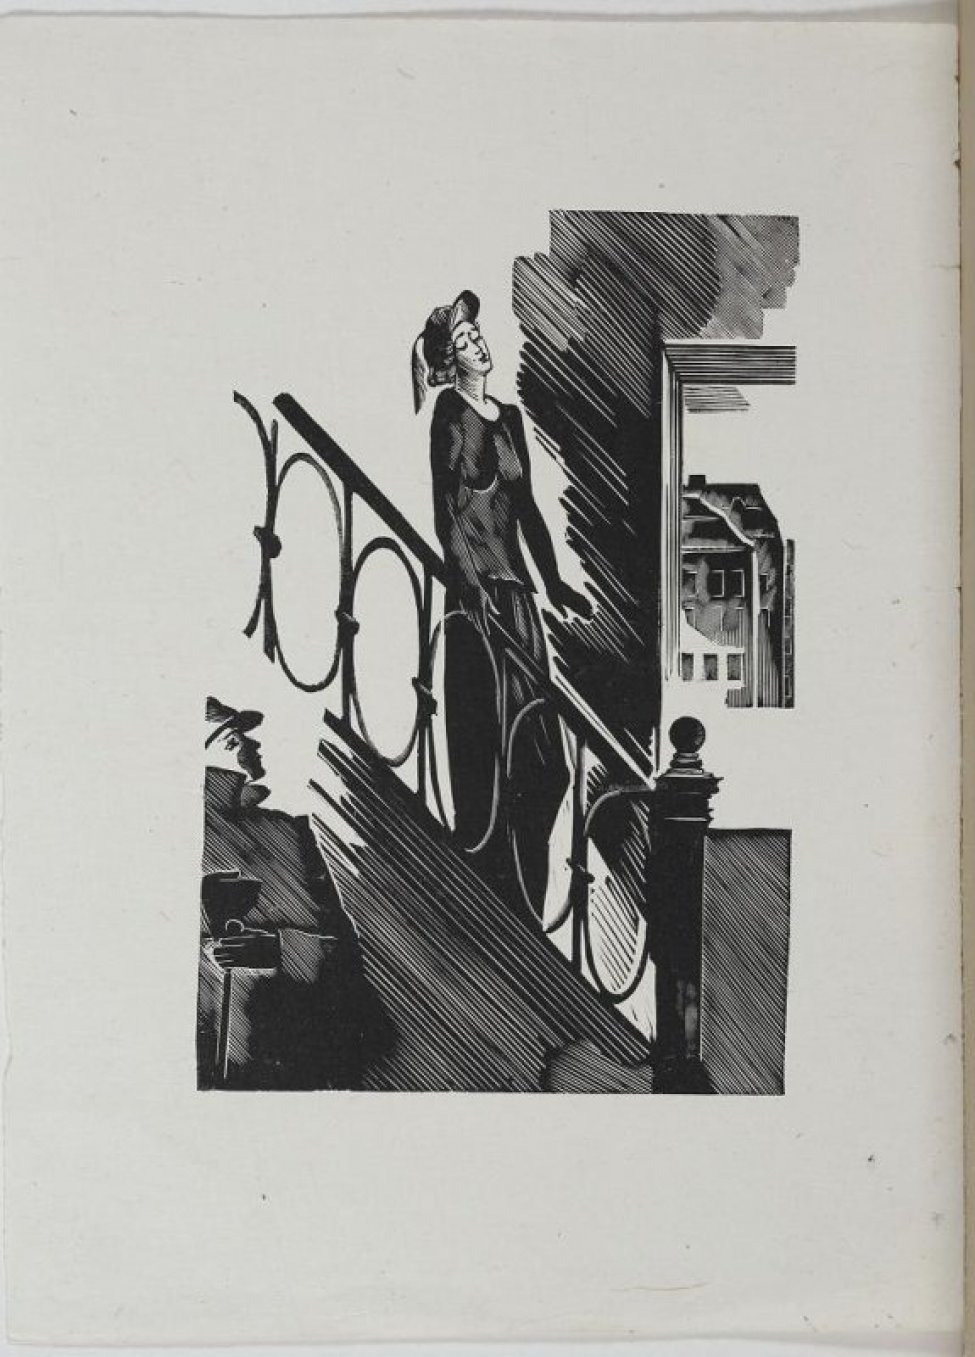 Изображено: по диагонали листа справа нямба лестница с ажурной решеткой, по которой спускается женщина. В левом нижнем углу фигура мужчины. На заднем фоне в проеме окна видны дома.